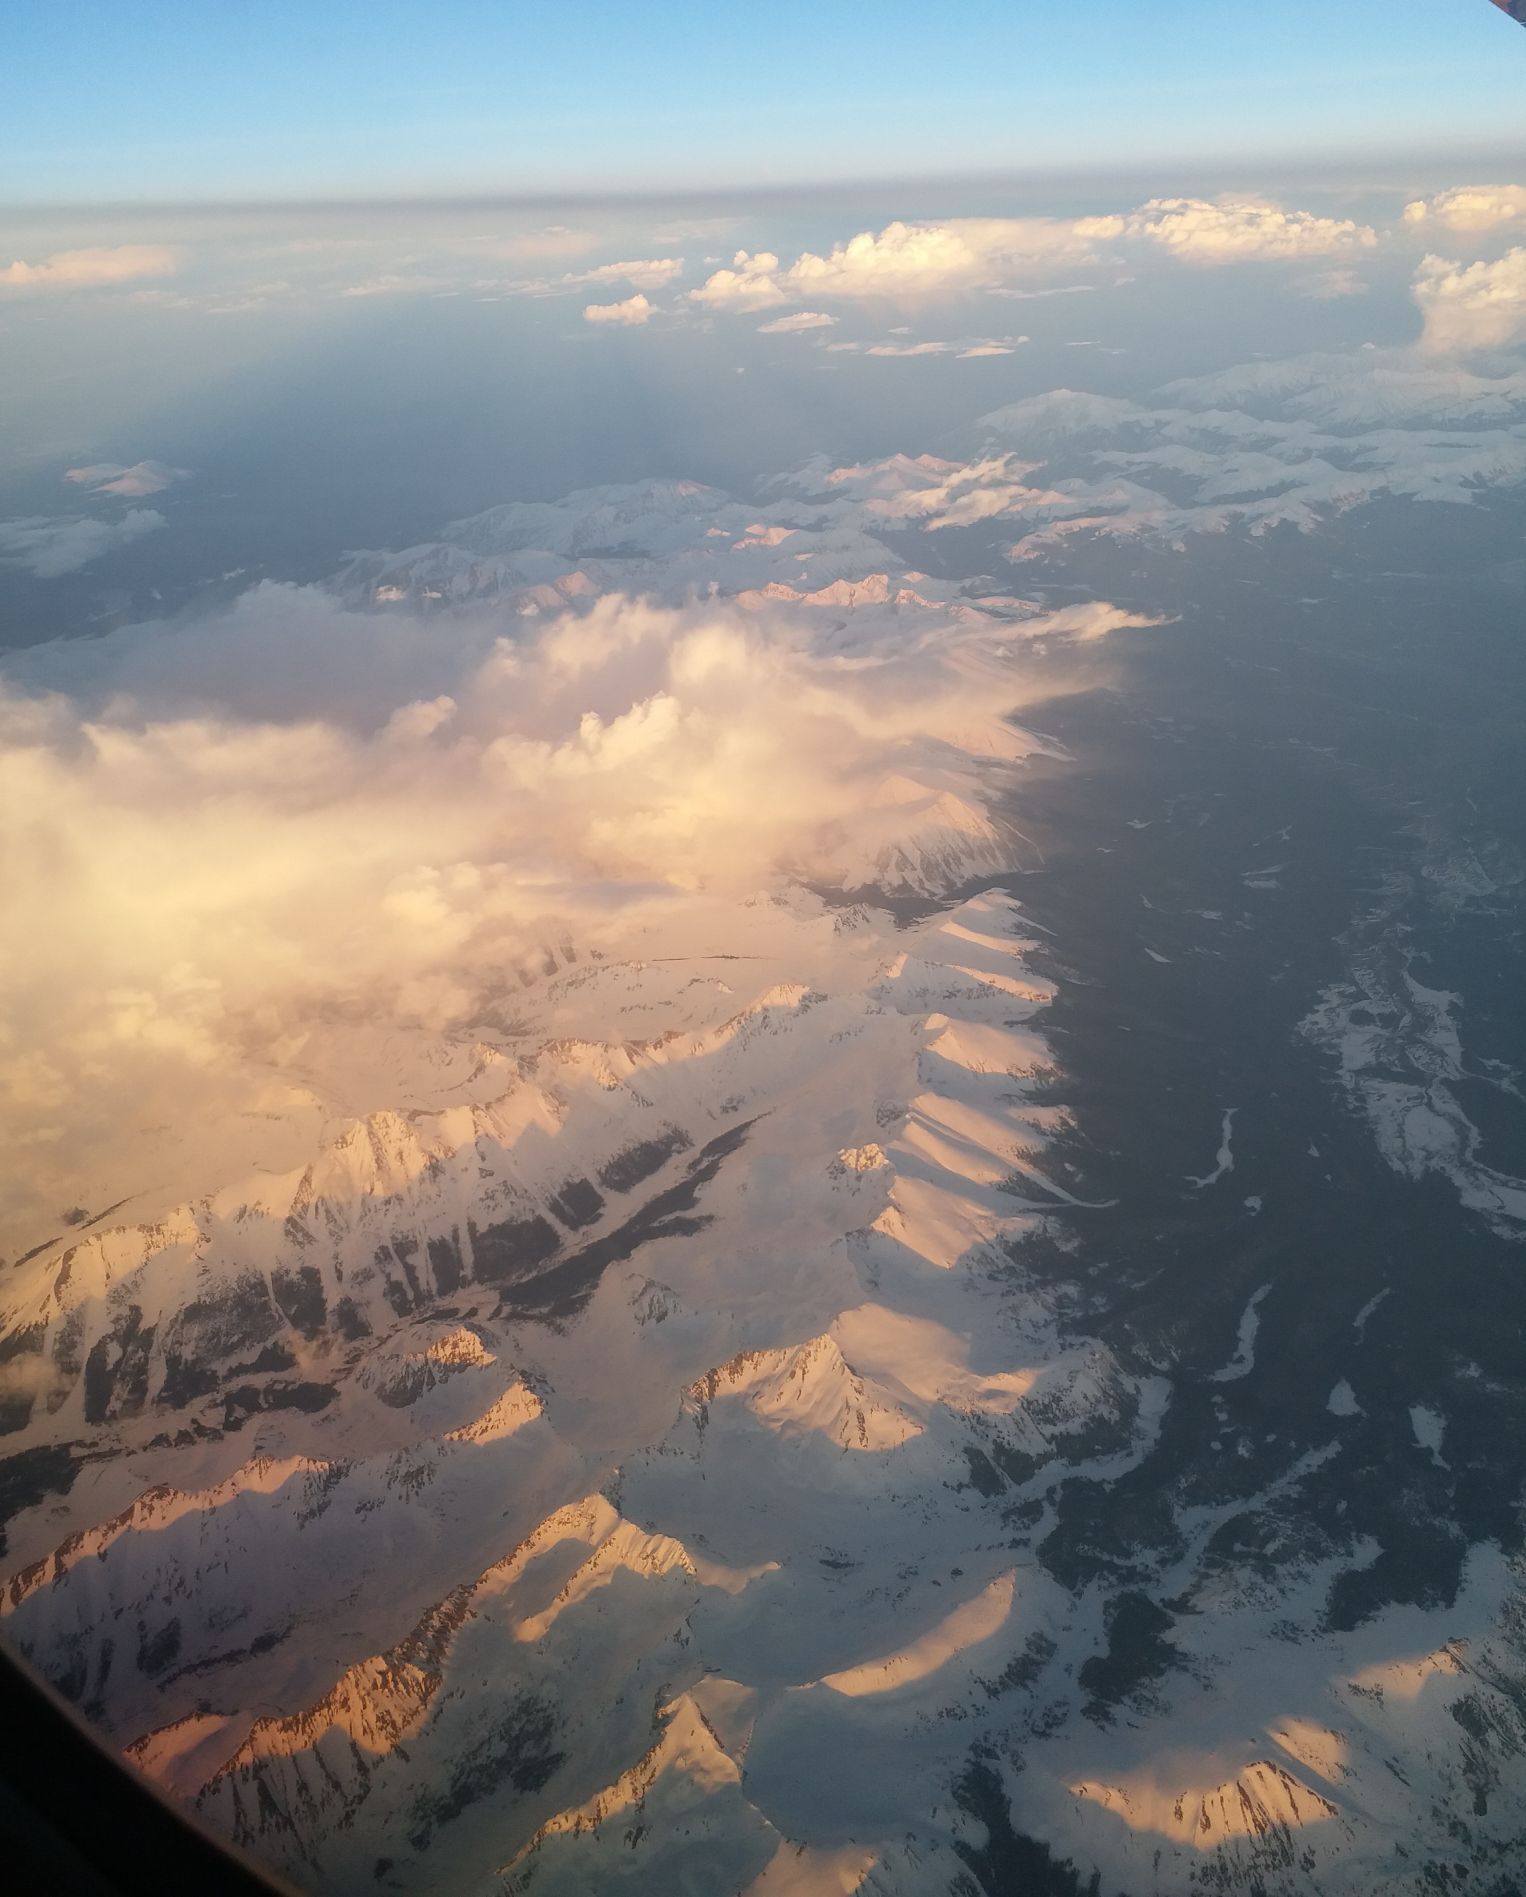 空中拍摄落基山山脉。雪山霞光很美。